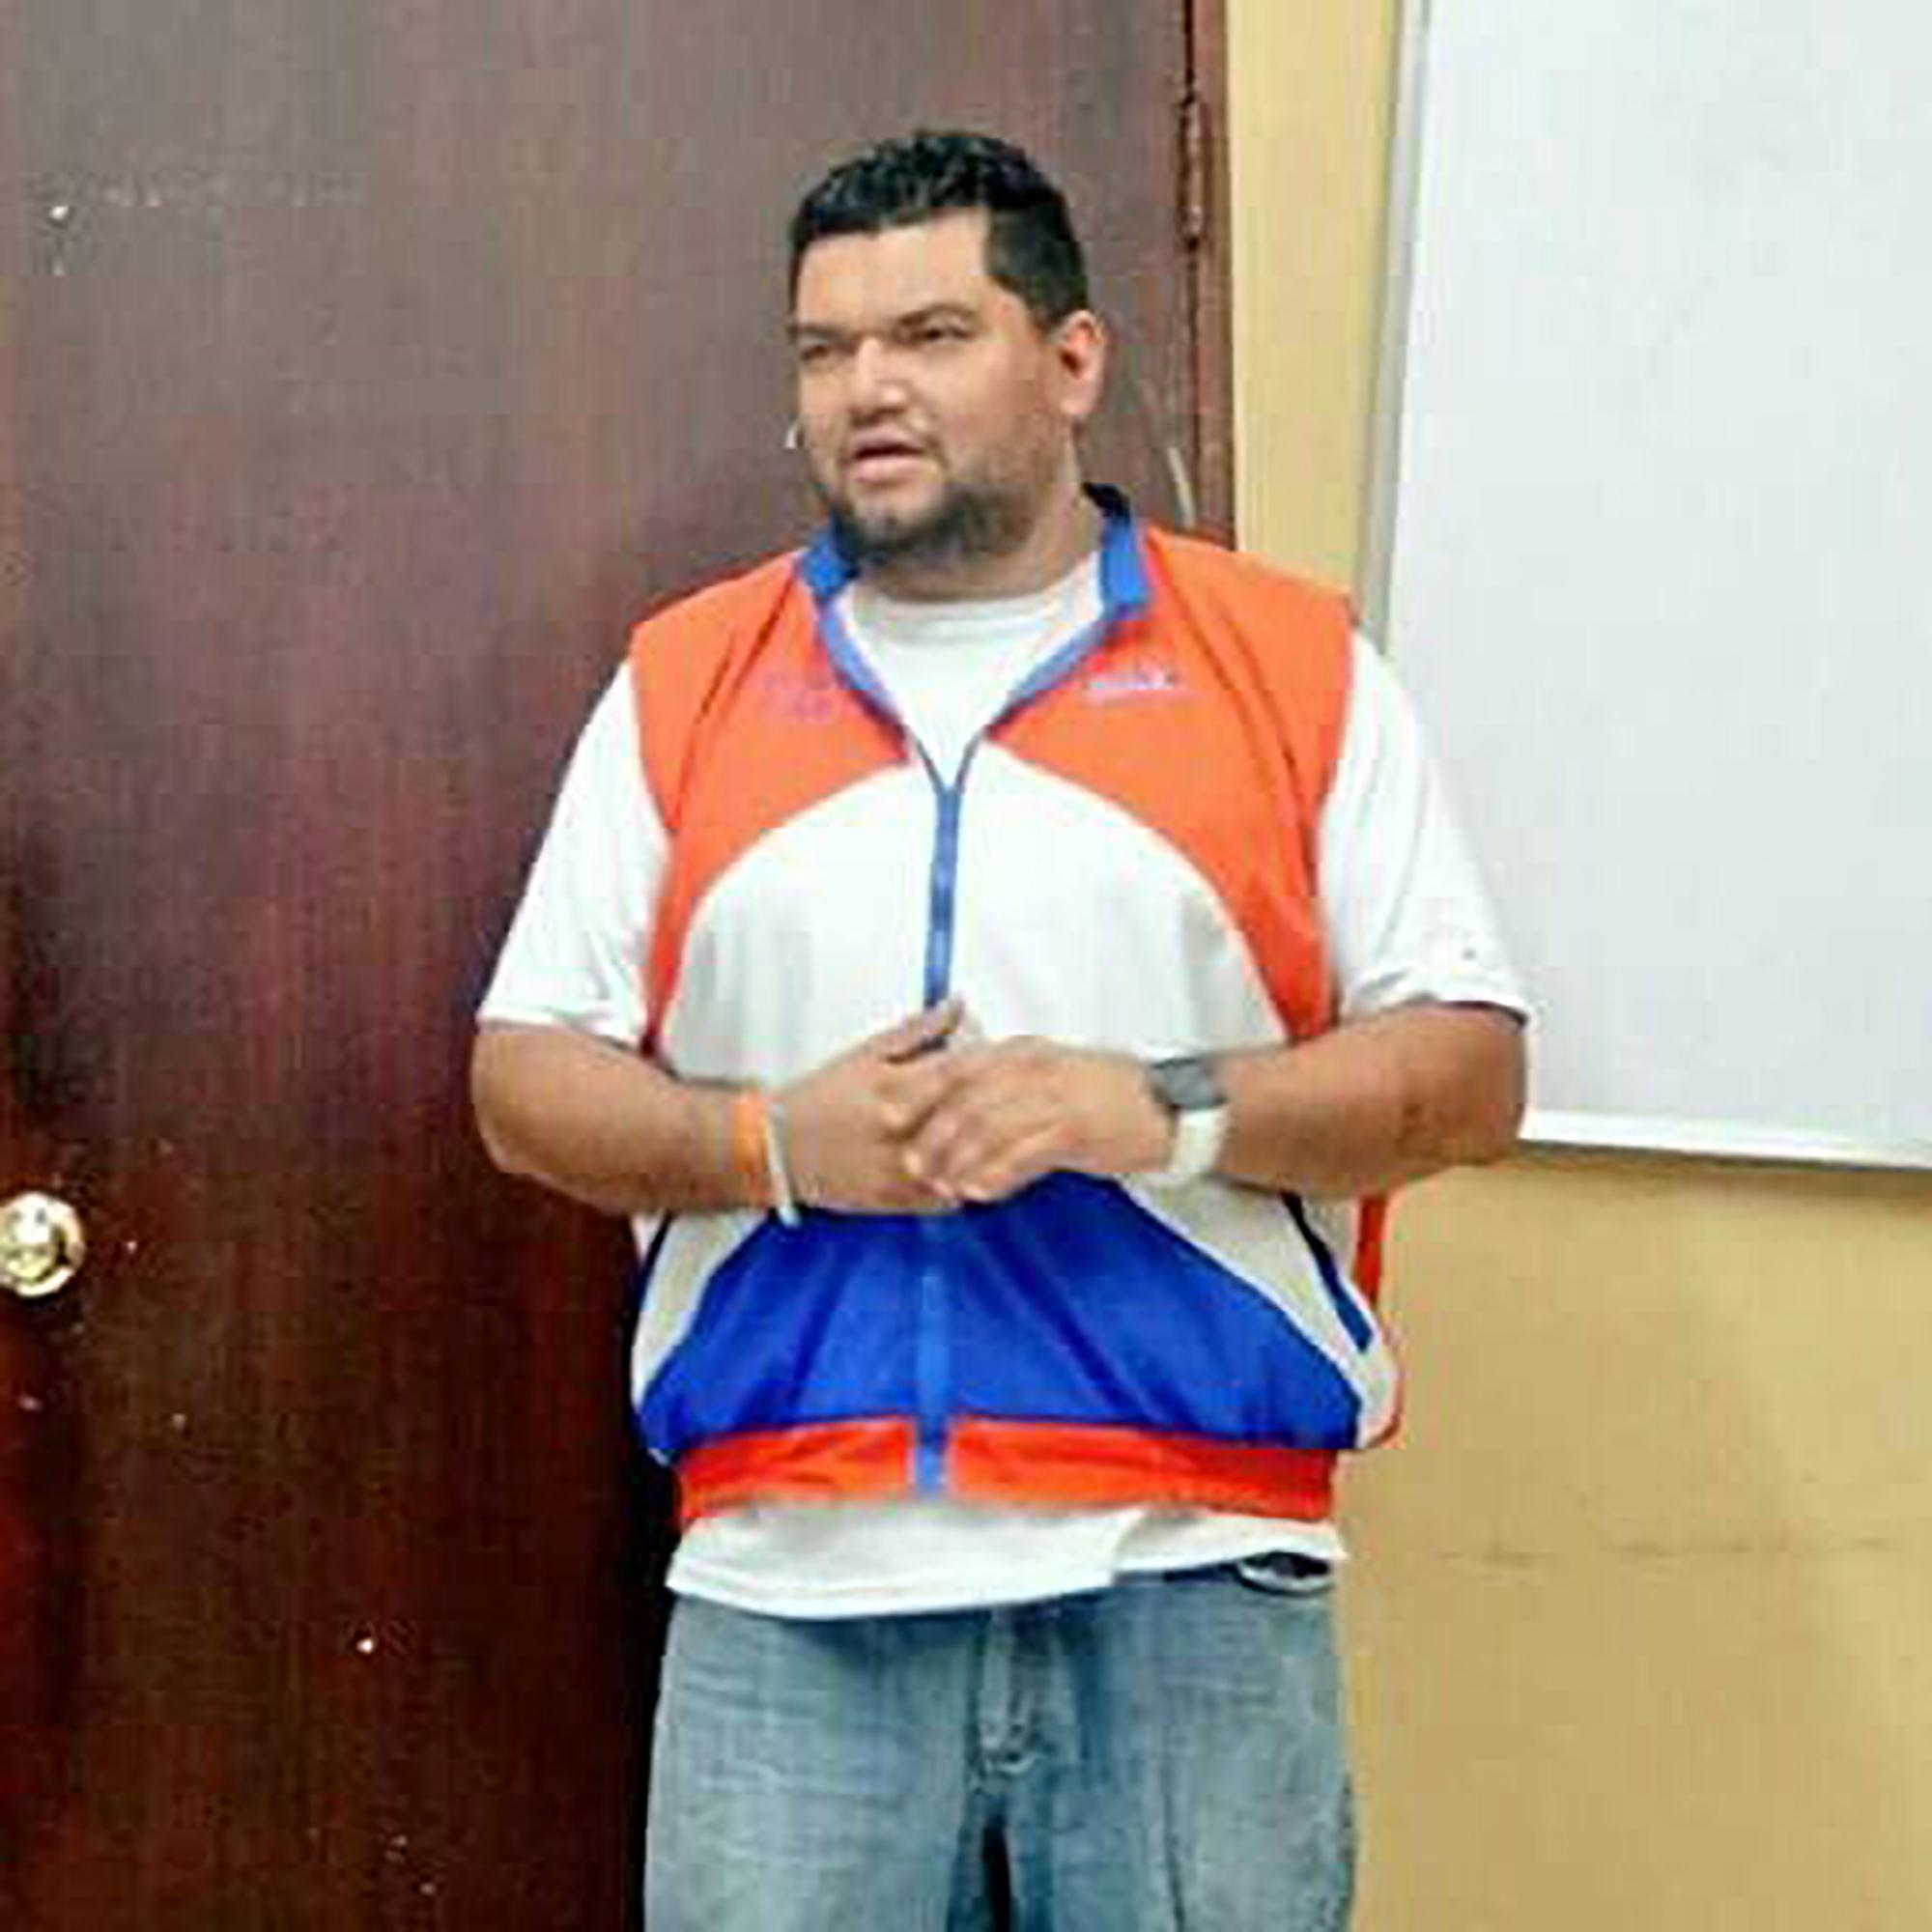 Ricardo Ernesto Salguero Ventura, el nuevo director de la cárcel de Máxima seguridad de Izalco Fase III, es un militante del partido GANA, fue candidato a diputado y asesor legislativo de ese partido. La imagen fue proporcionada a El Faro por una de sus fuentes.